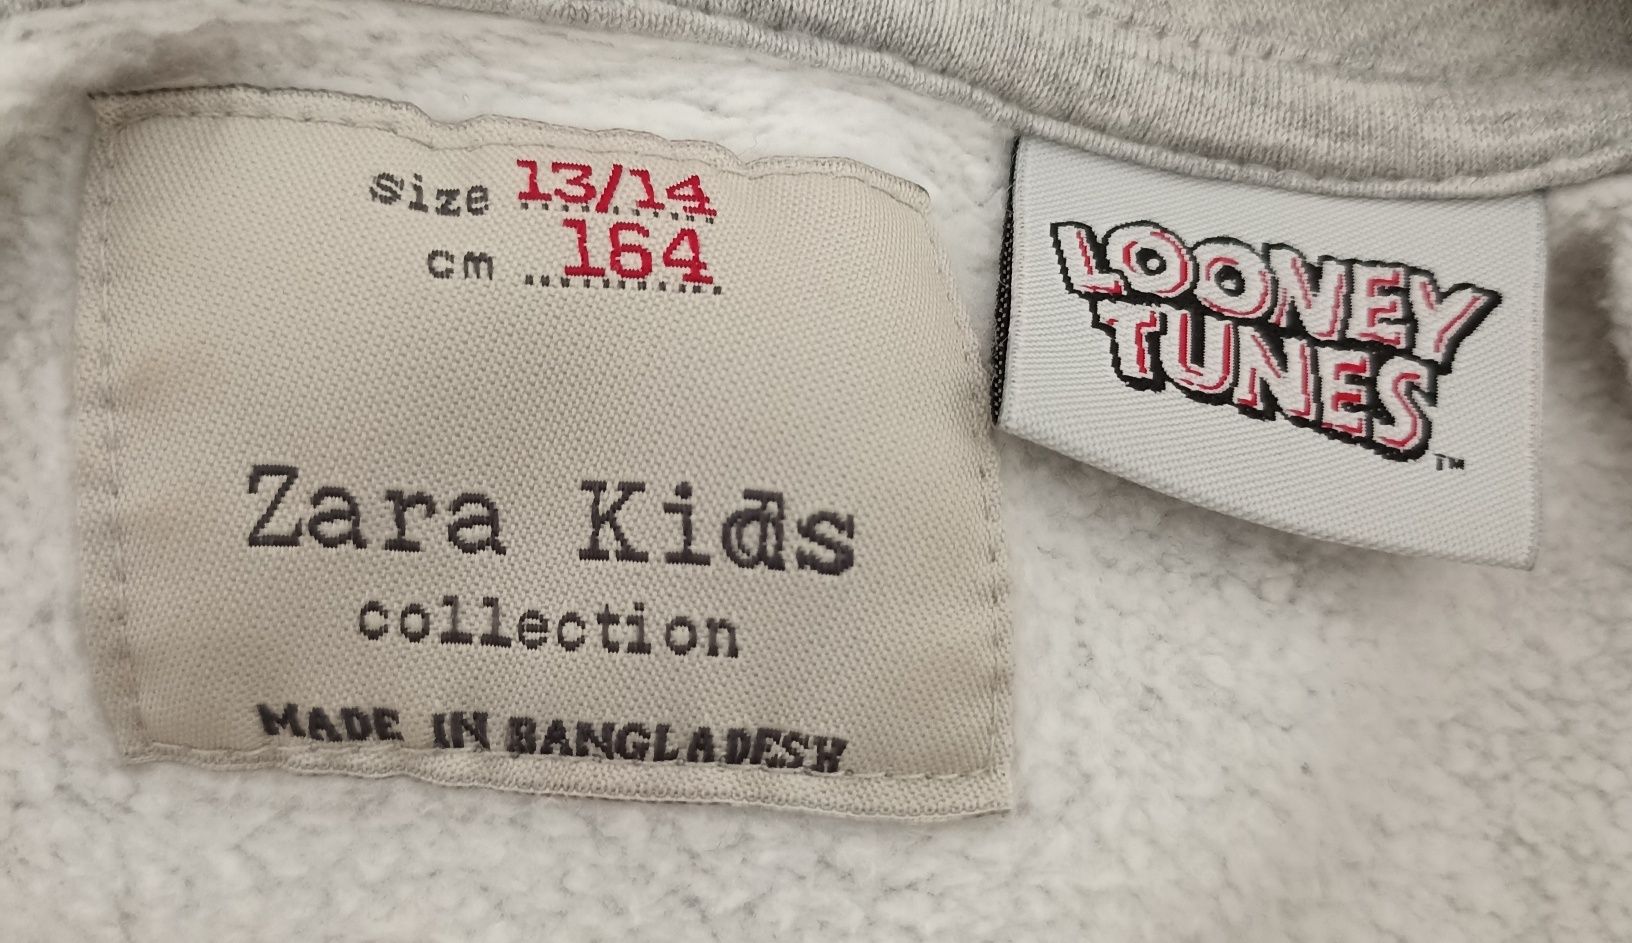 Sweatshirt da Zara kids e LOONEY TUNES